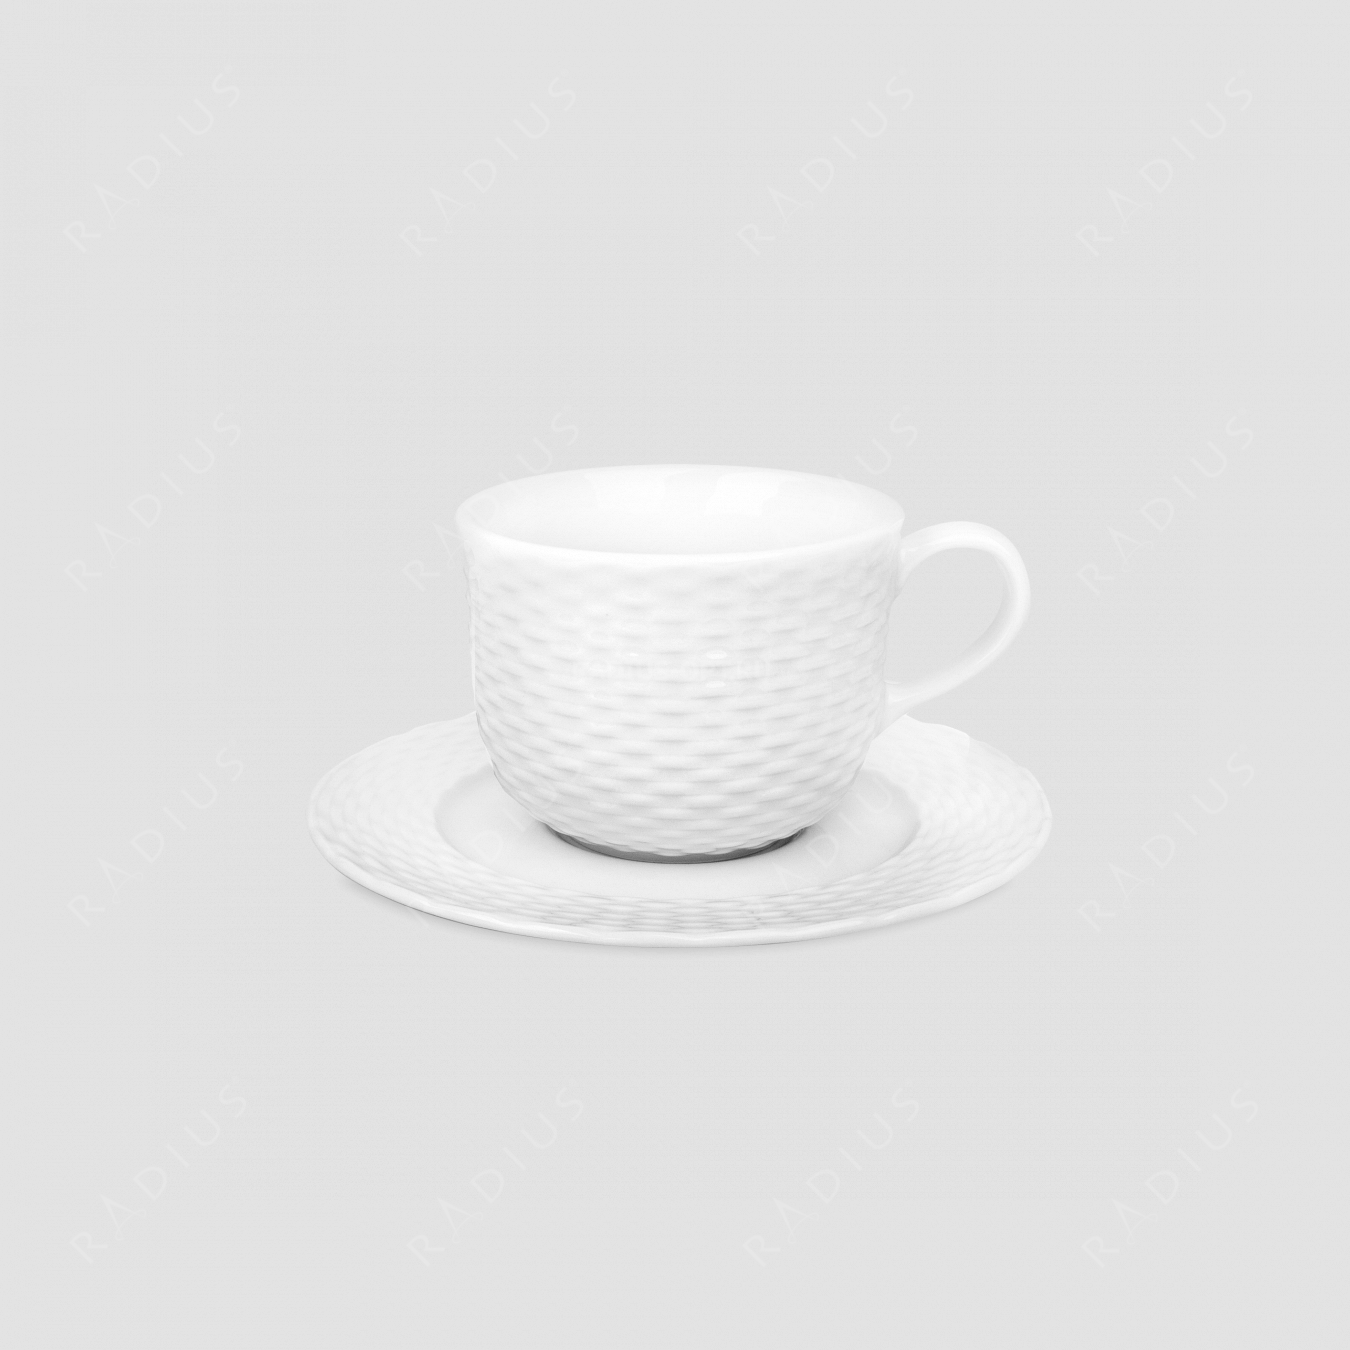 Чашка чайная 250 мл, с блюдцем 16 см, серия Basket, PILLIVUYT, Франция